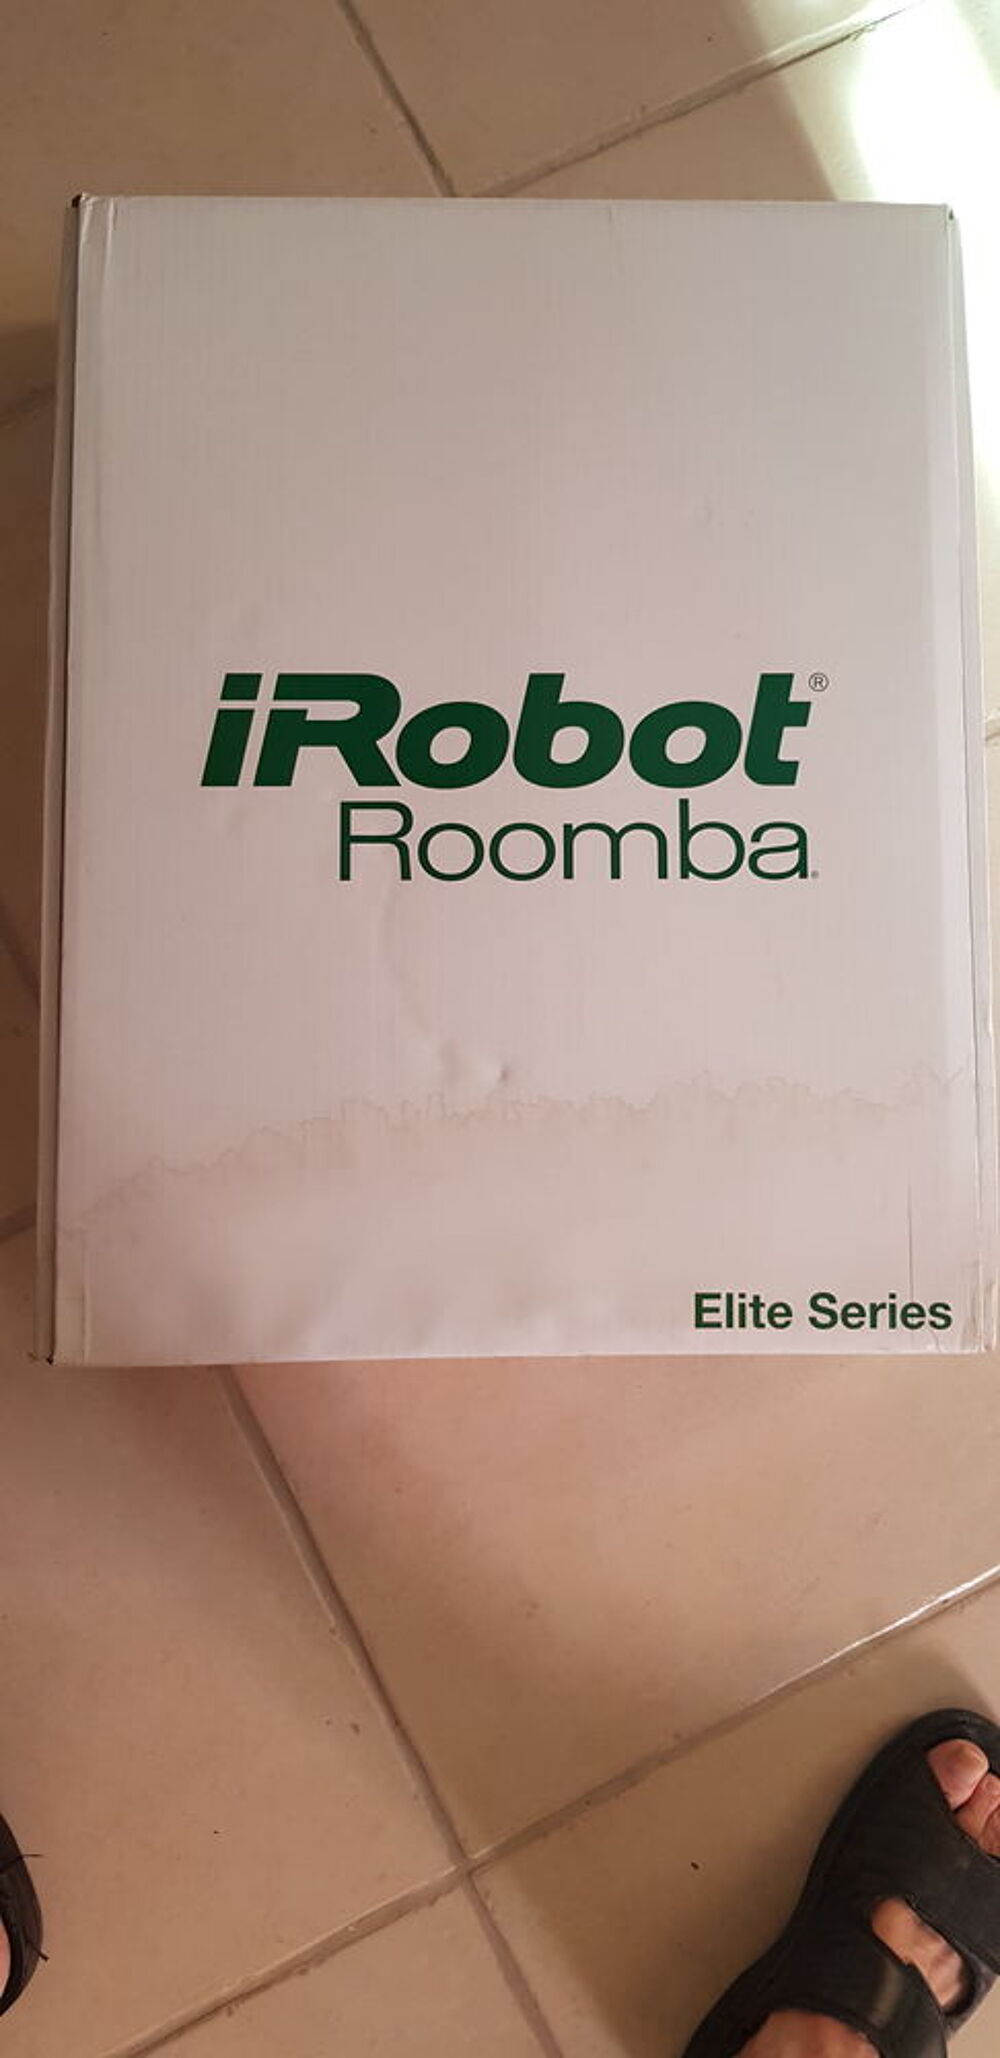 iRobot Roomba Elite Series. Electromnager